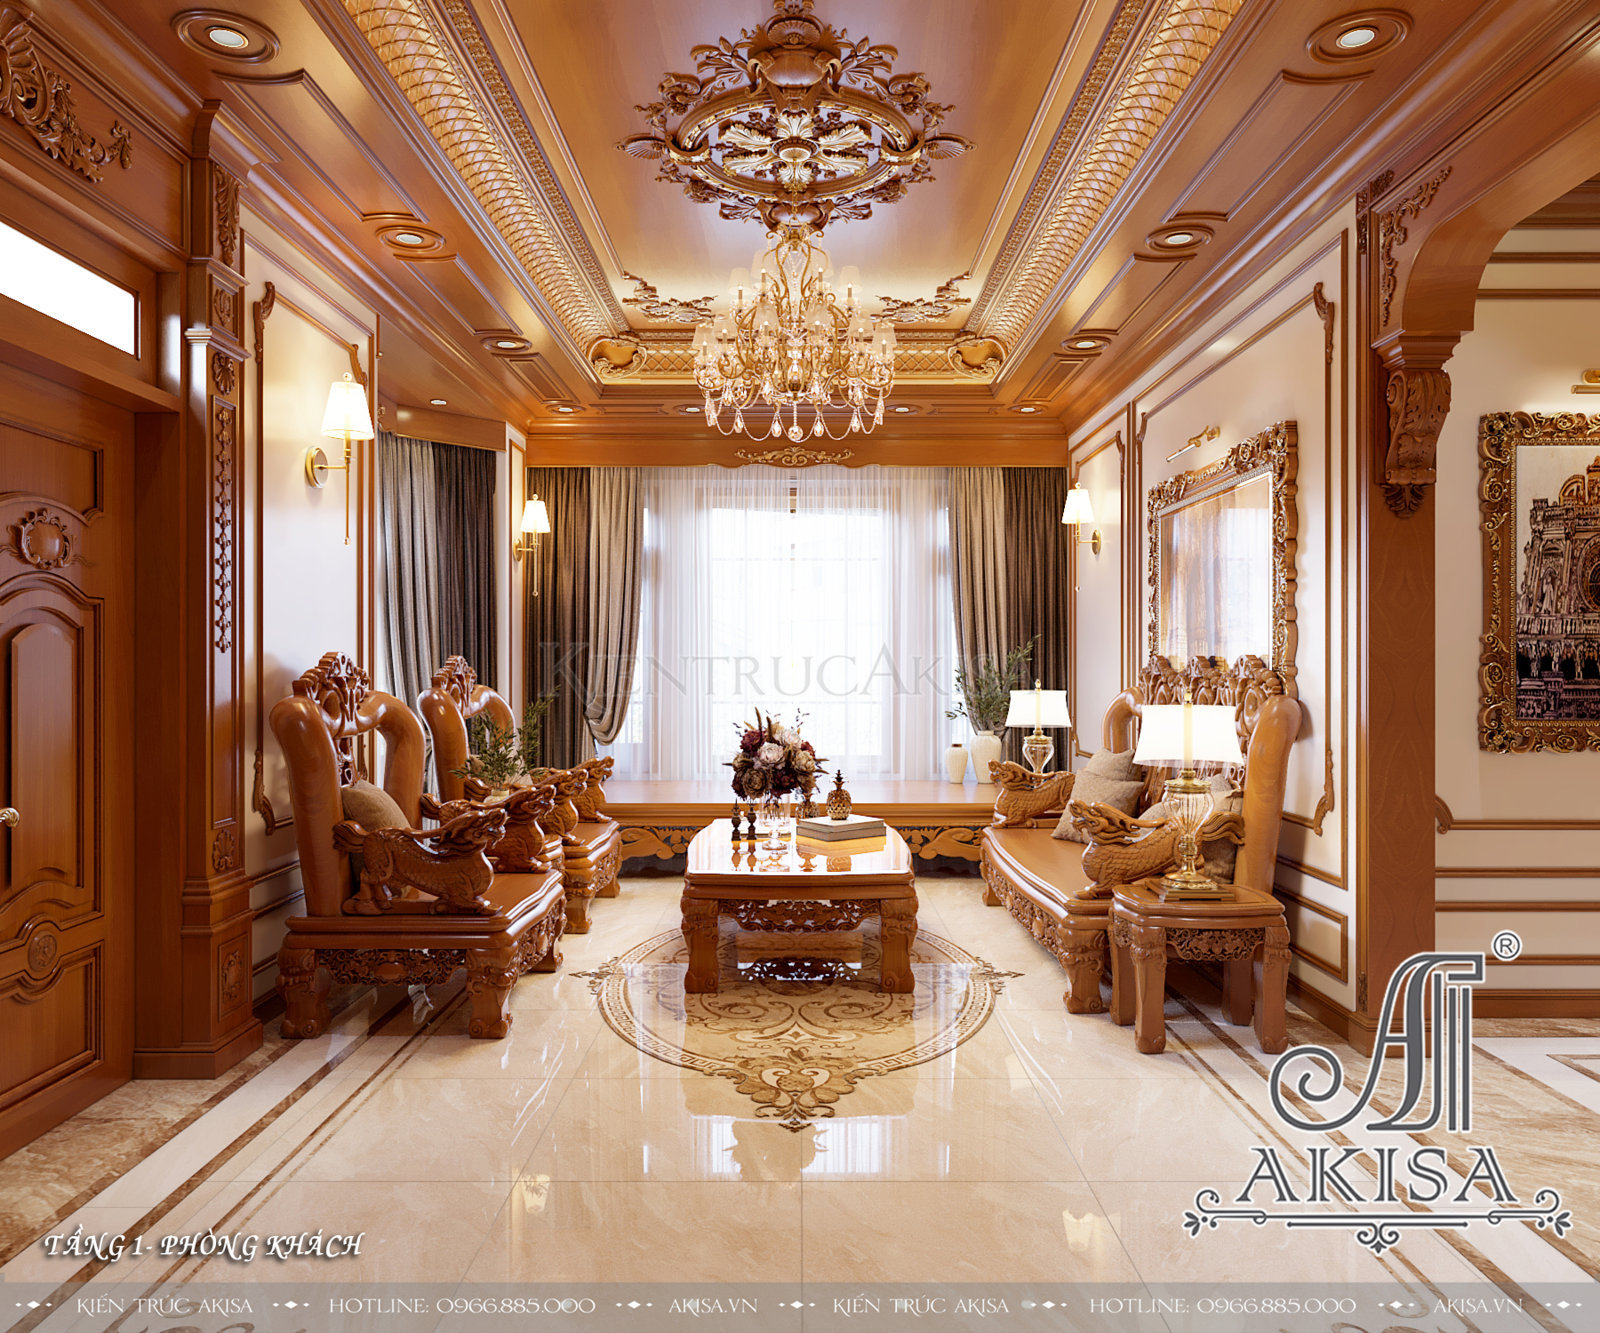 Mẫu nội thất gỗ hương phong cách tân cổ điển - Phòng khách